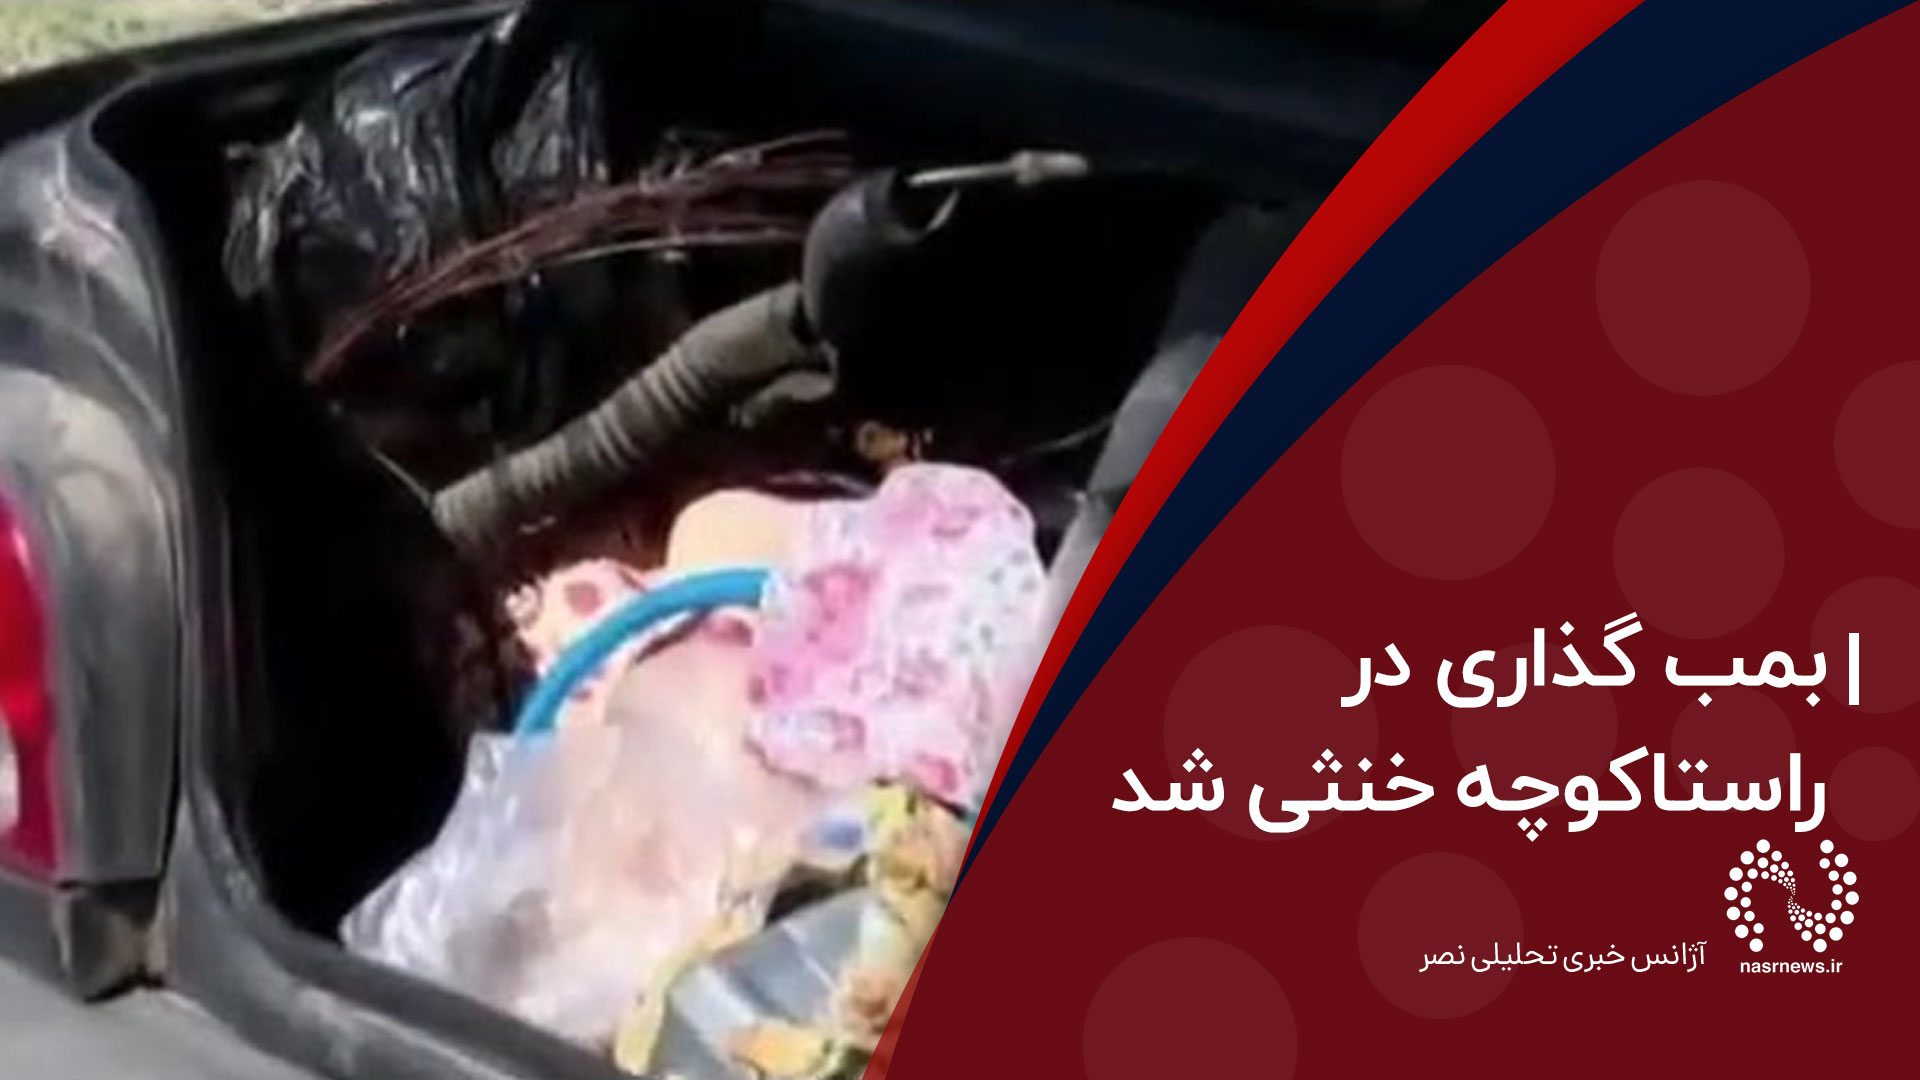 فیلم | جزییات جدید از دستگیری عامل انتحاری در تبریز/ بمب گذاری در راستاکوچه خنثی شد